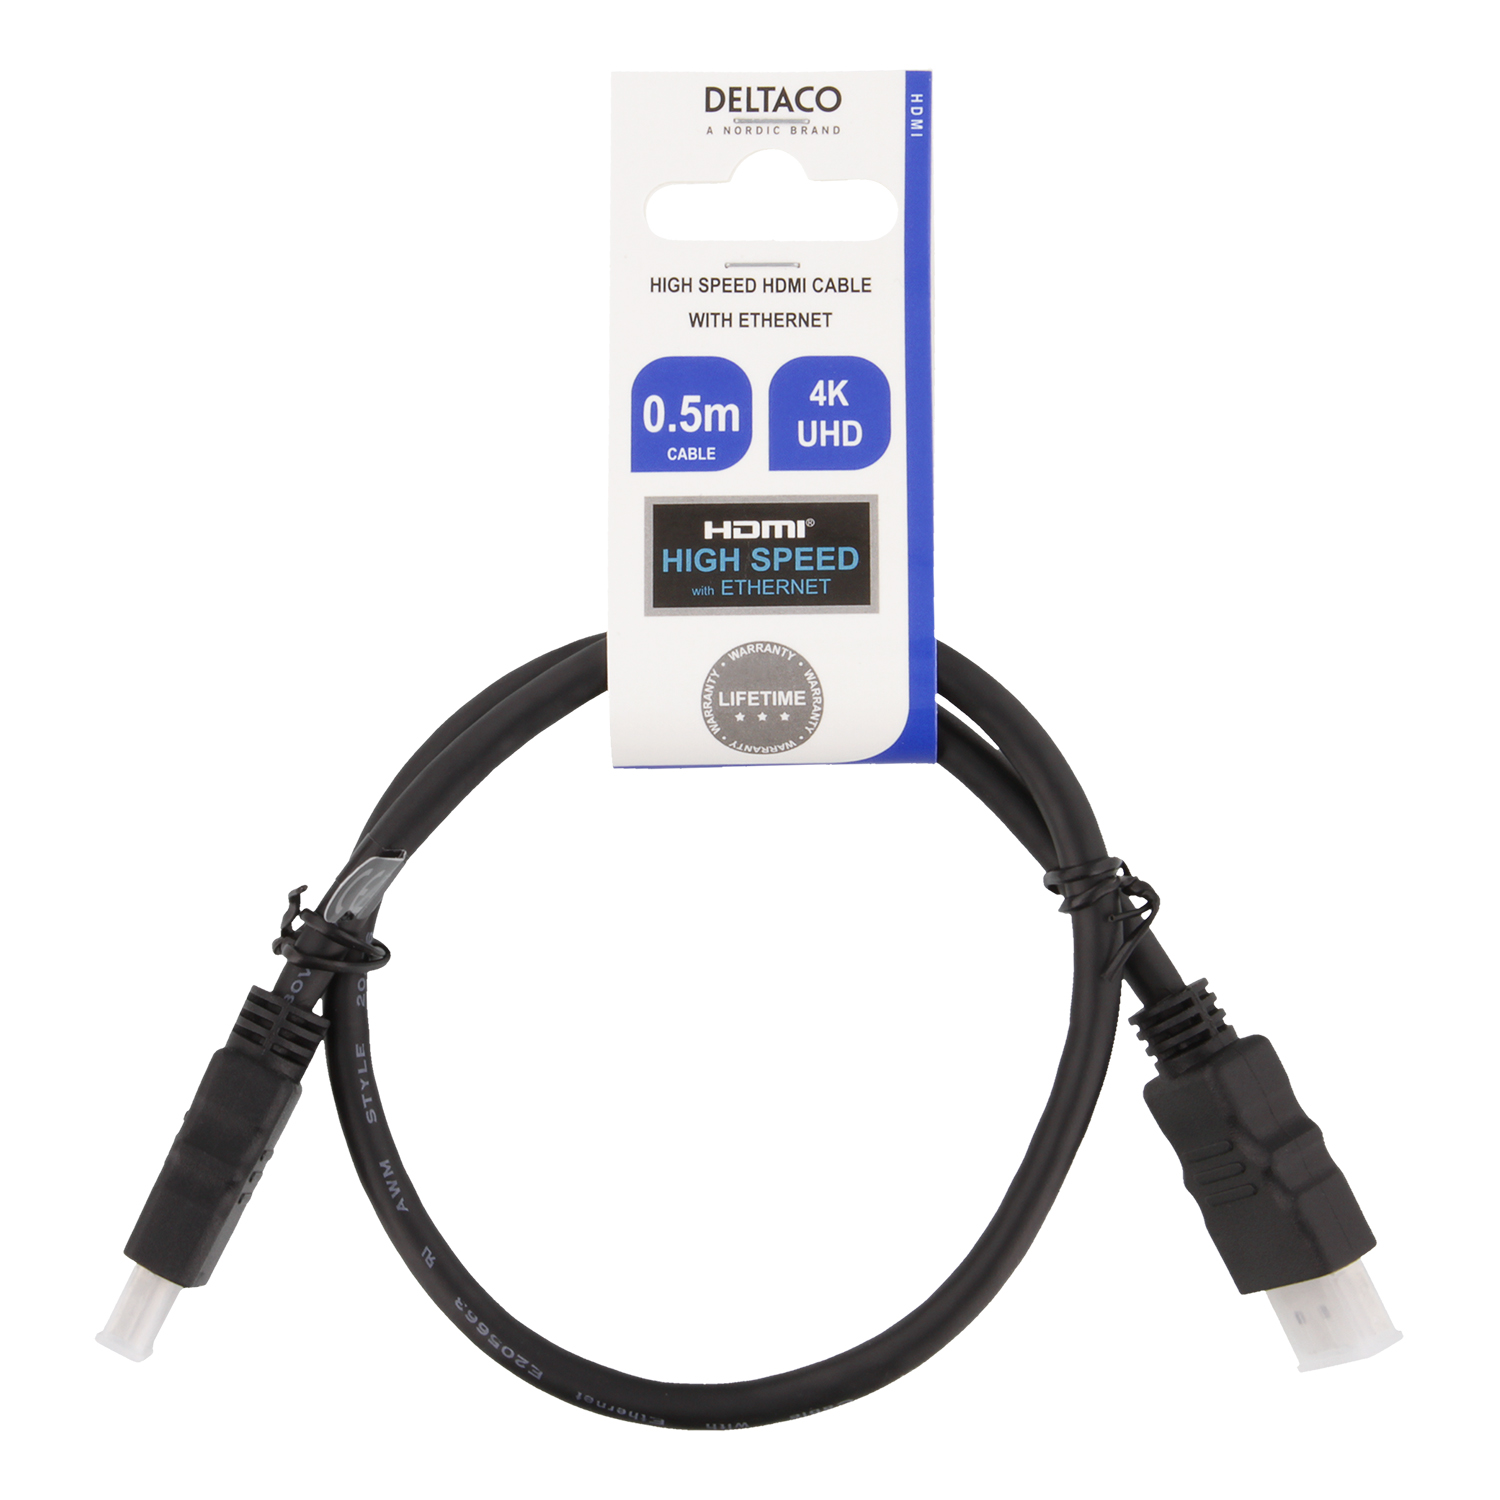 Deltaco HDMI kabel, CCS, High Speed, Ethernet, 0.5m, svart